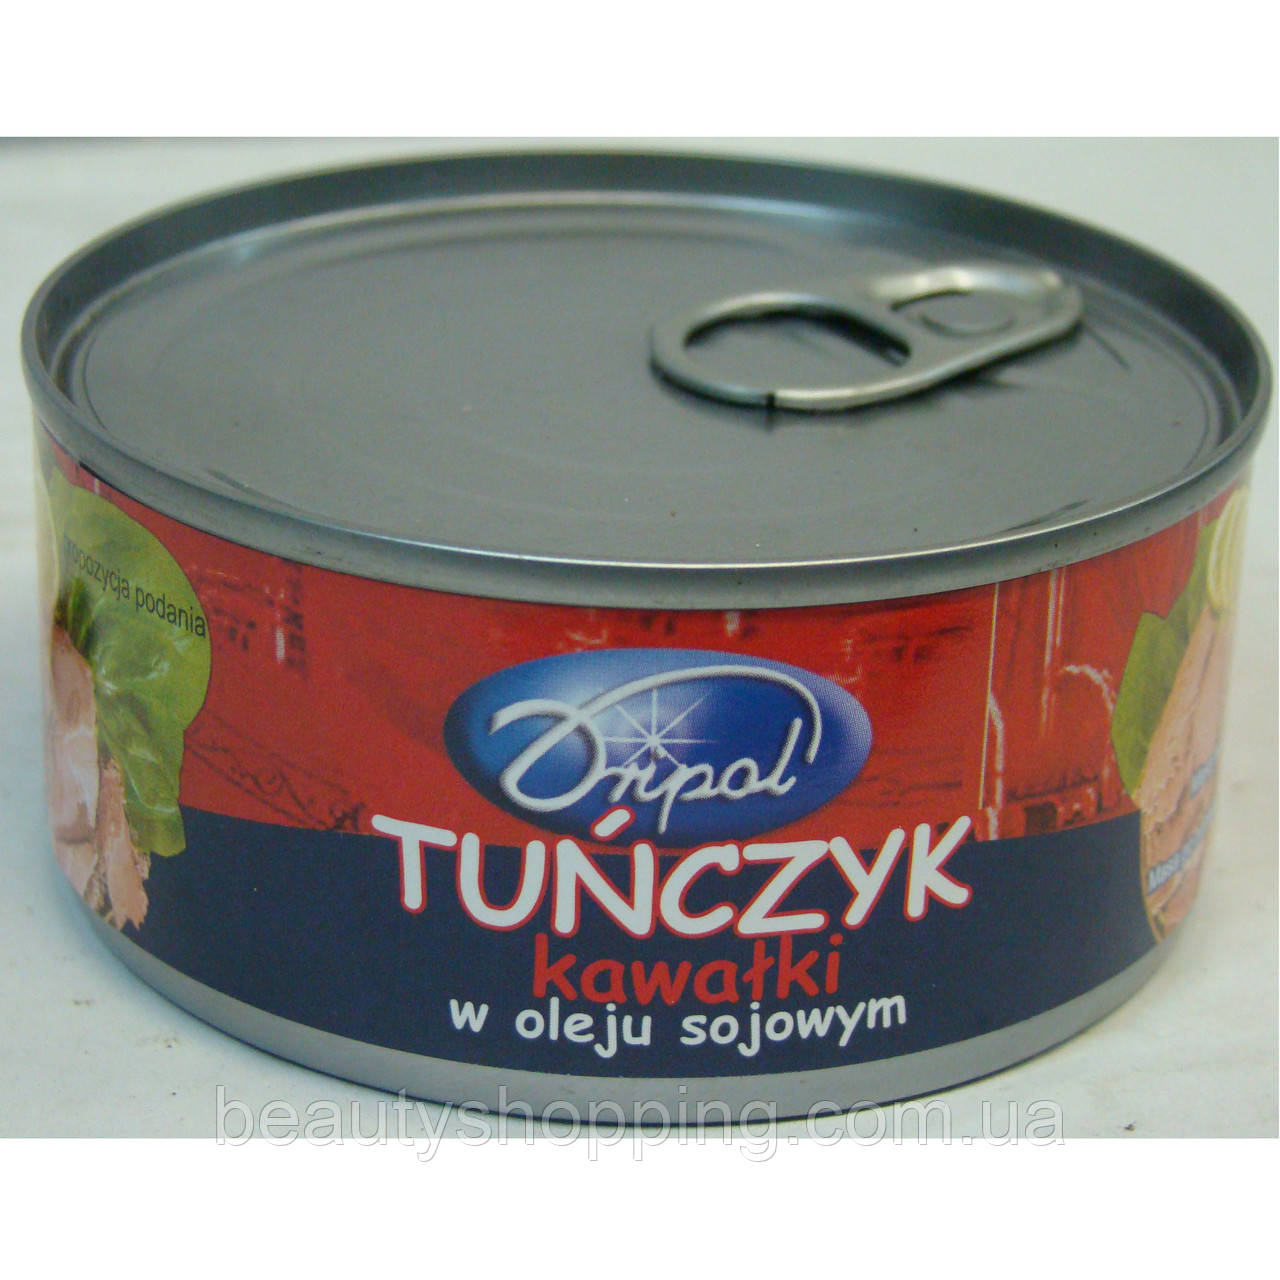 Тунець консервований в маслі шматочками Tunczyk kawalki 170g Driol Польща